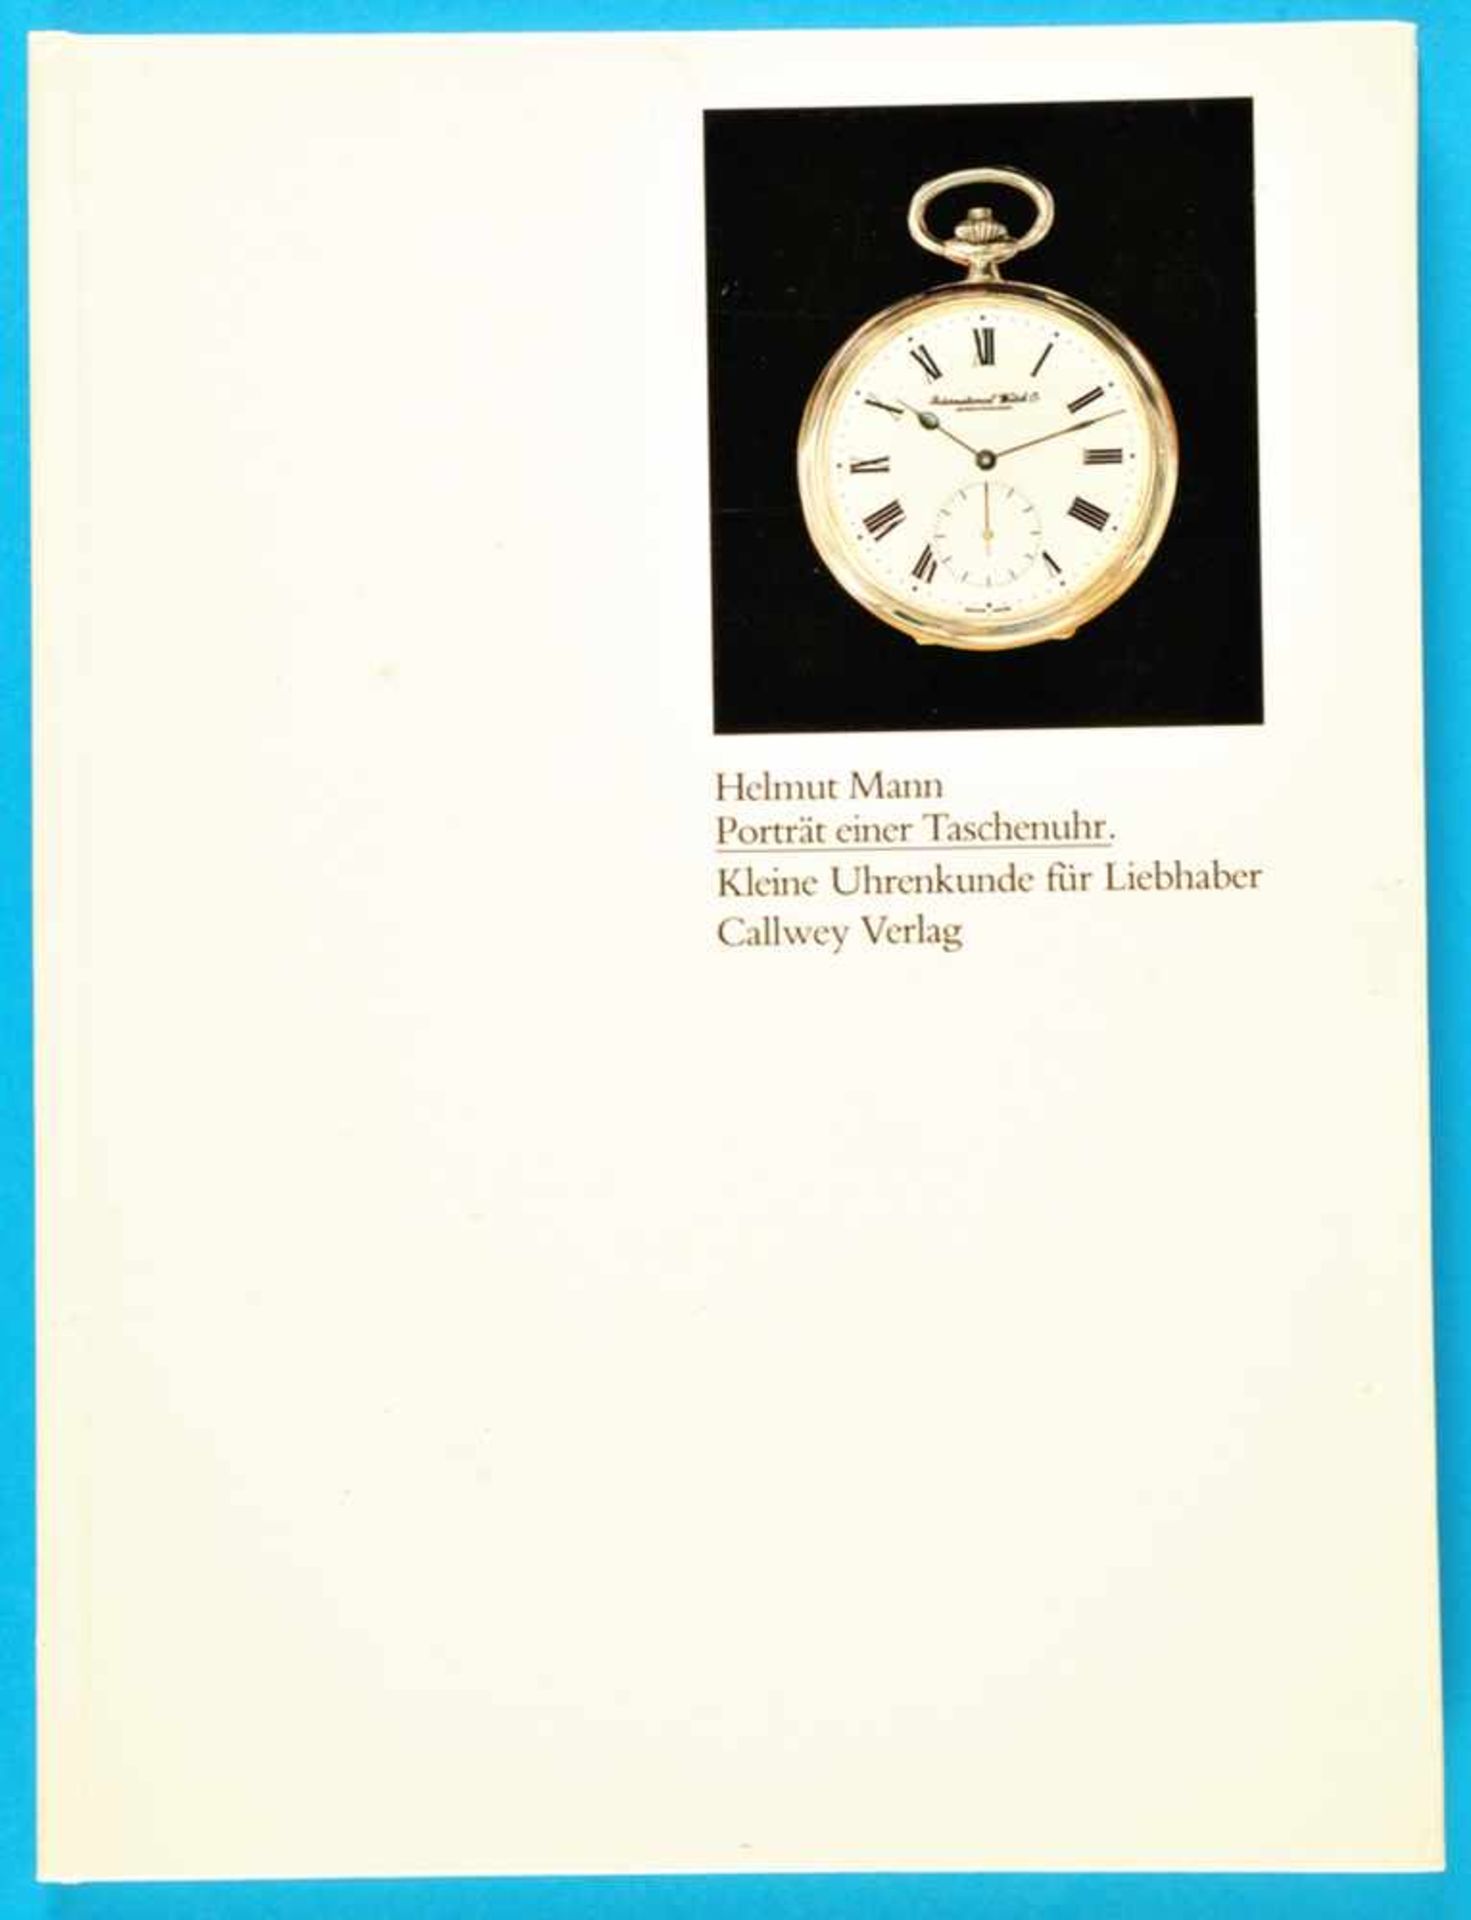 H. Mann, Portrait einer Taschenuhr - IWC - Kleine Uhrenkunde für Liebhaber, 1981<